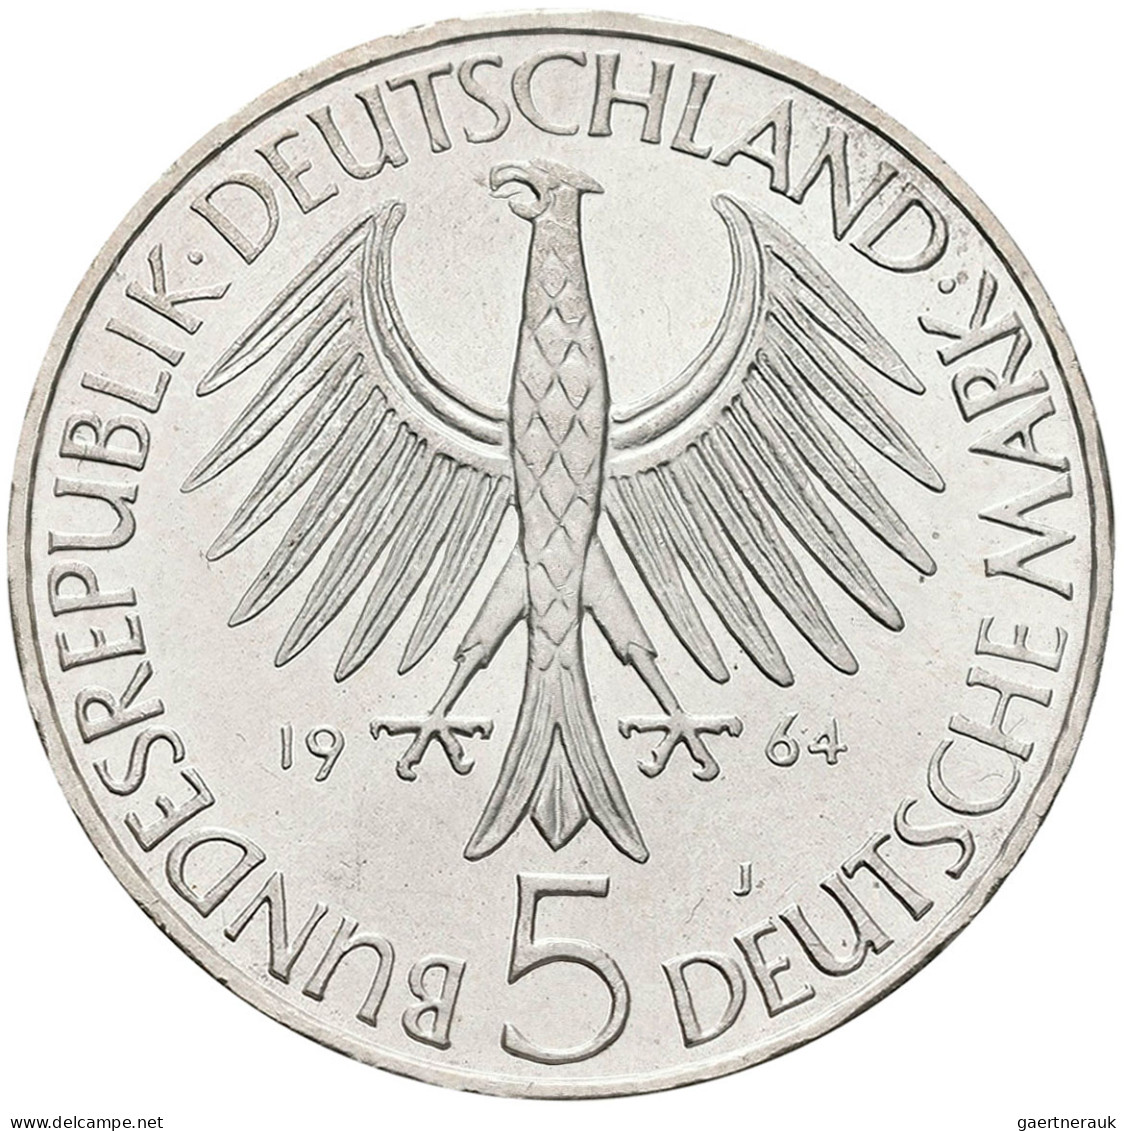 Bundesrepublik Deutschland 1948-2001: Die ersten Fünf. Von 5 DM Germanisches Mus